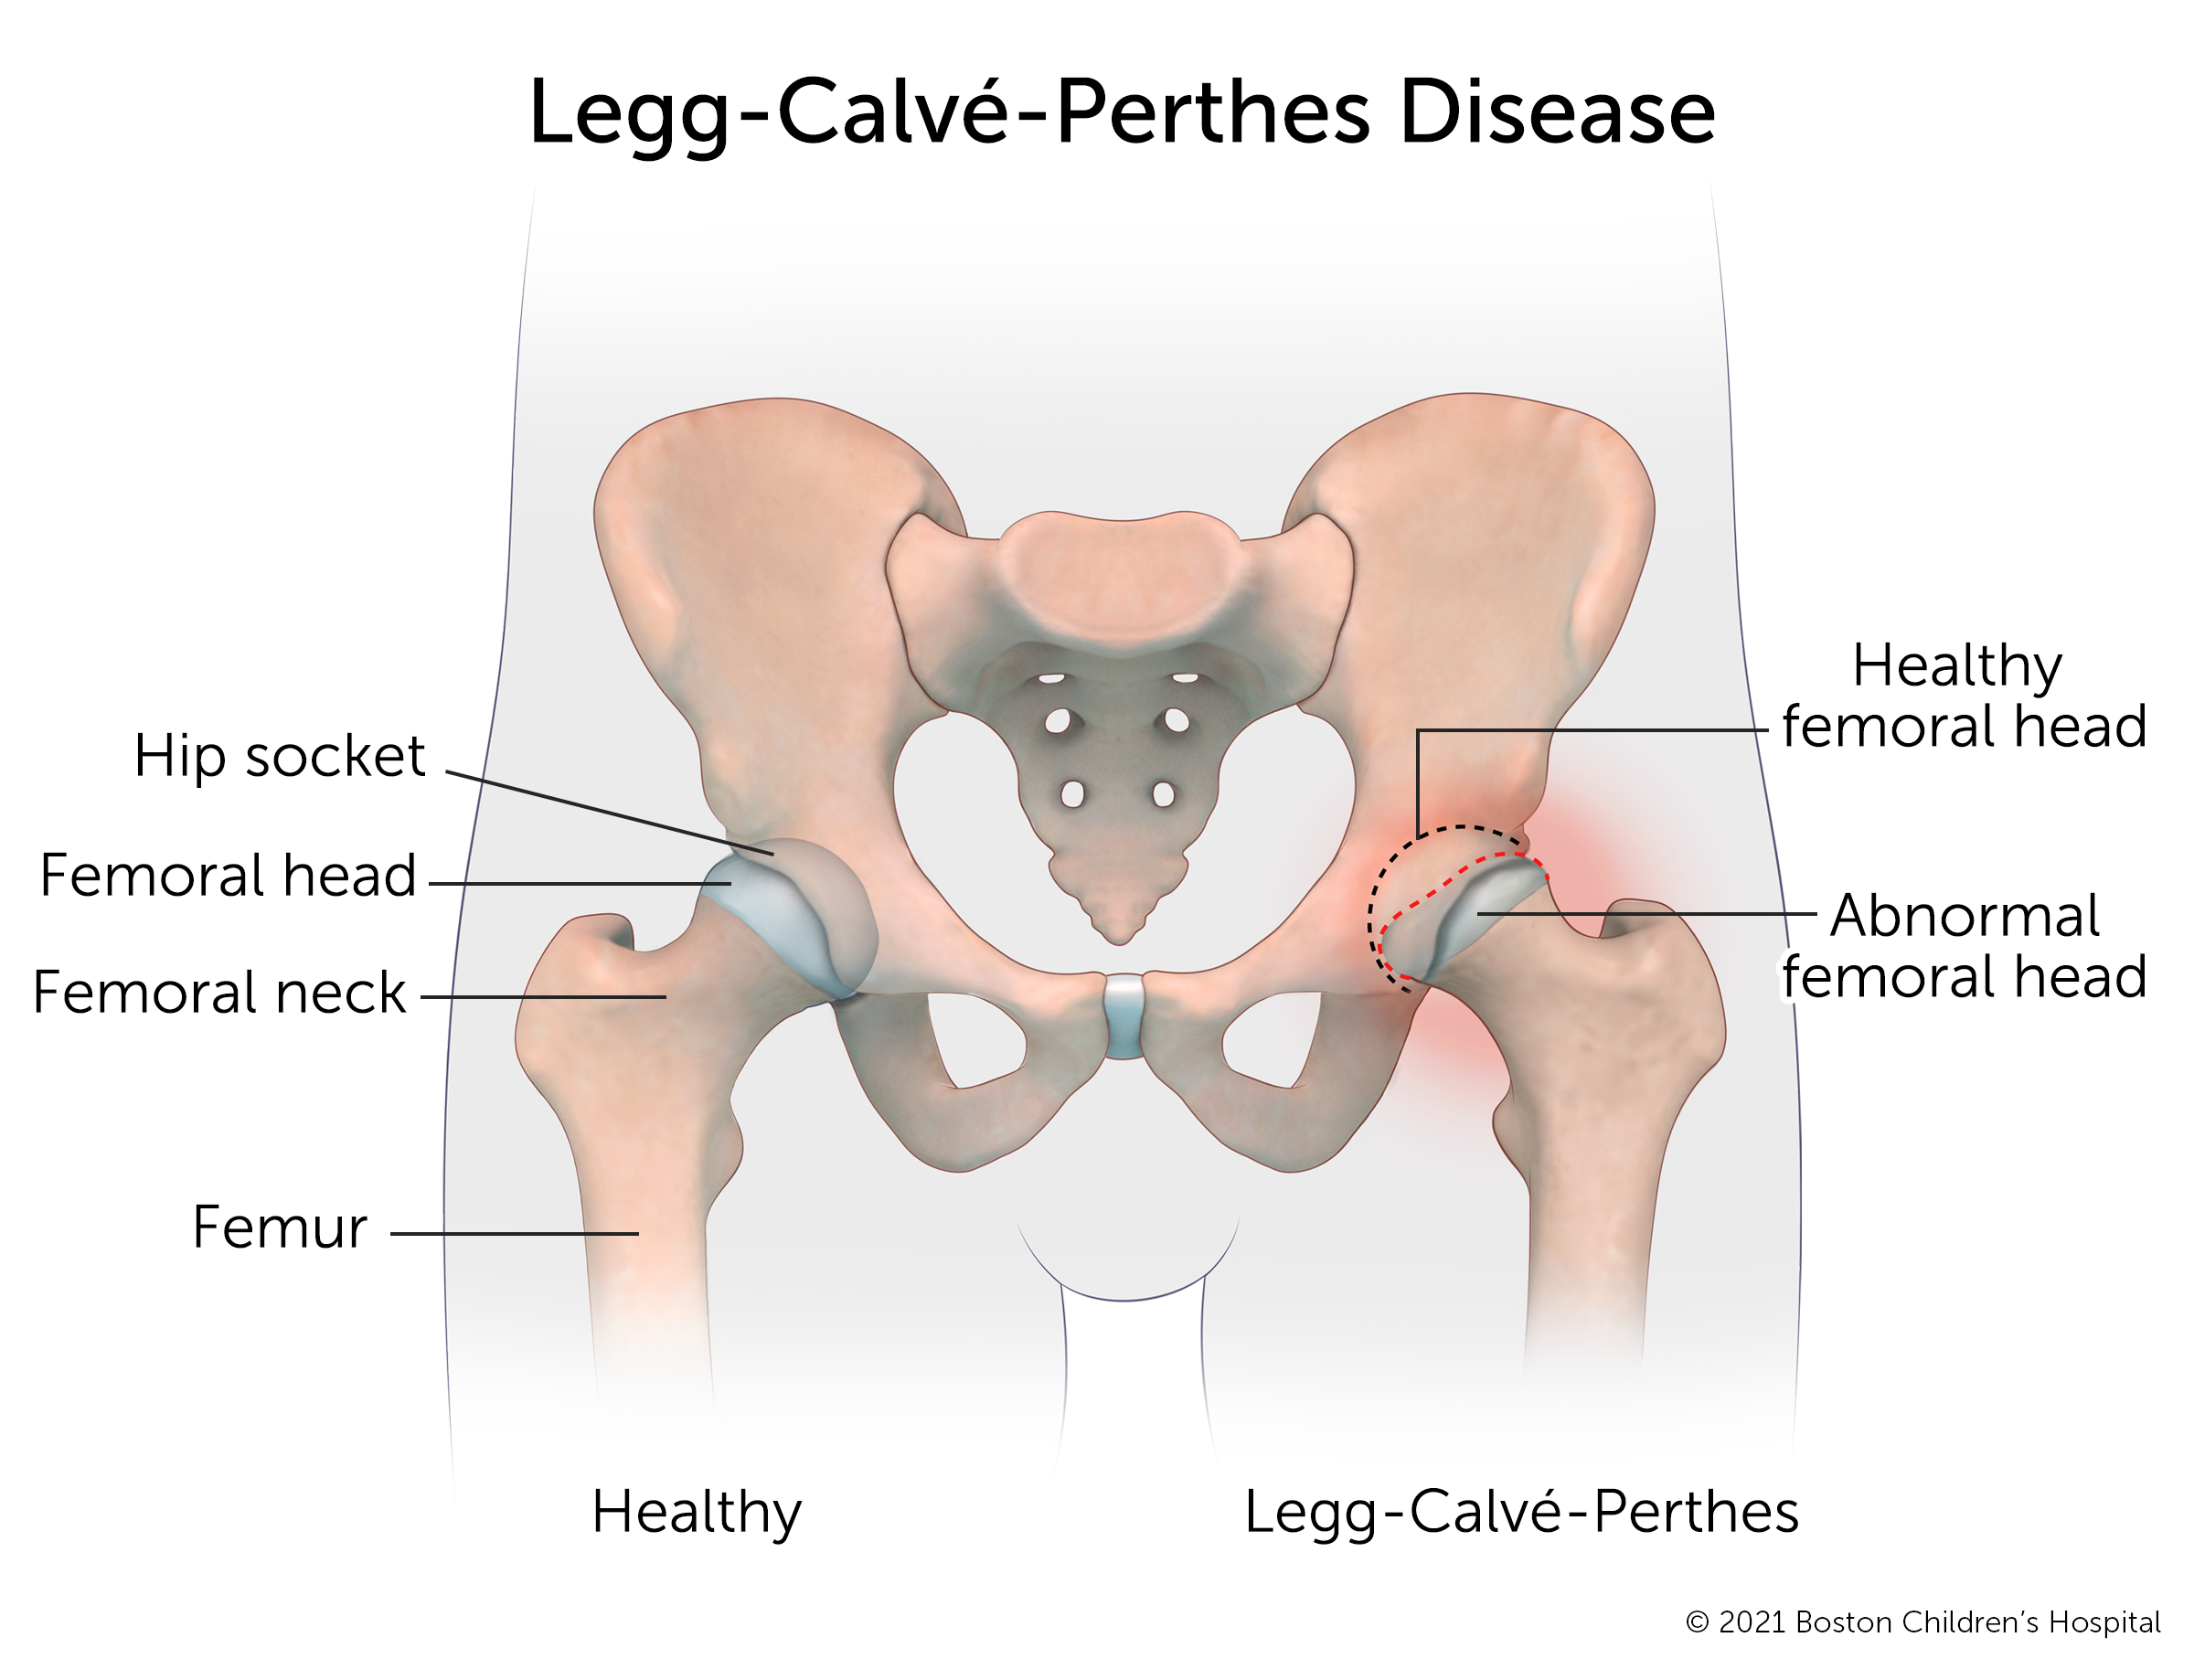 一个健康的髋关节与患有Legg-Calve-Perthes病的髋关节相比。在健康的髋关节中，股骨头是圆形的，可以安全地插入髋臼。在患有Perthes病的髋关节，股骨头变平了，在窝里有一个空的口袋。周围是红肿的。